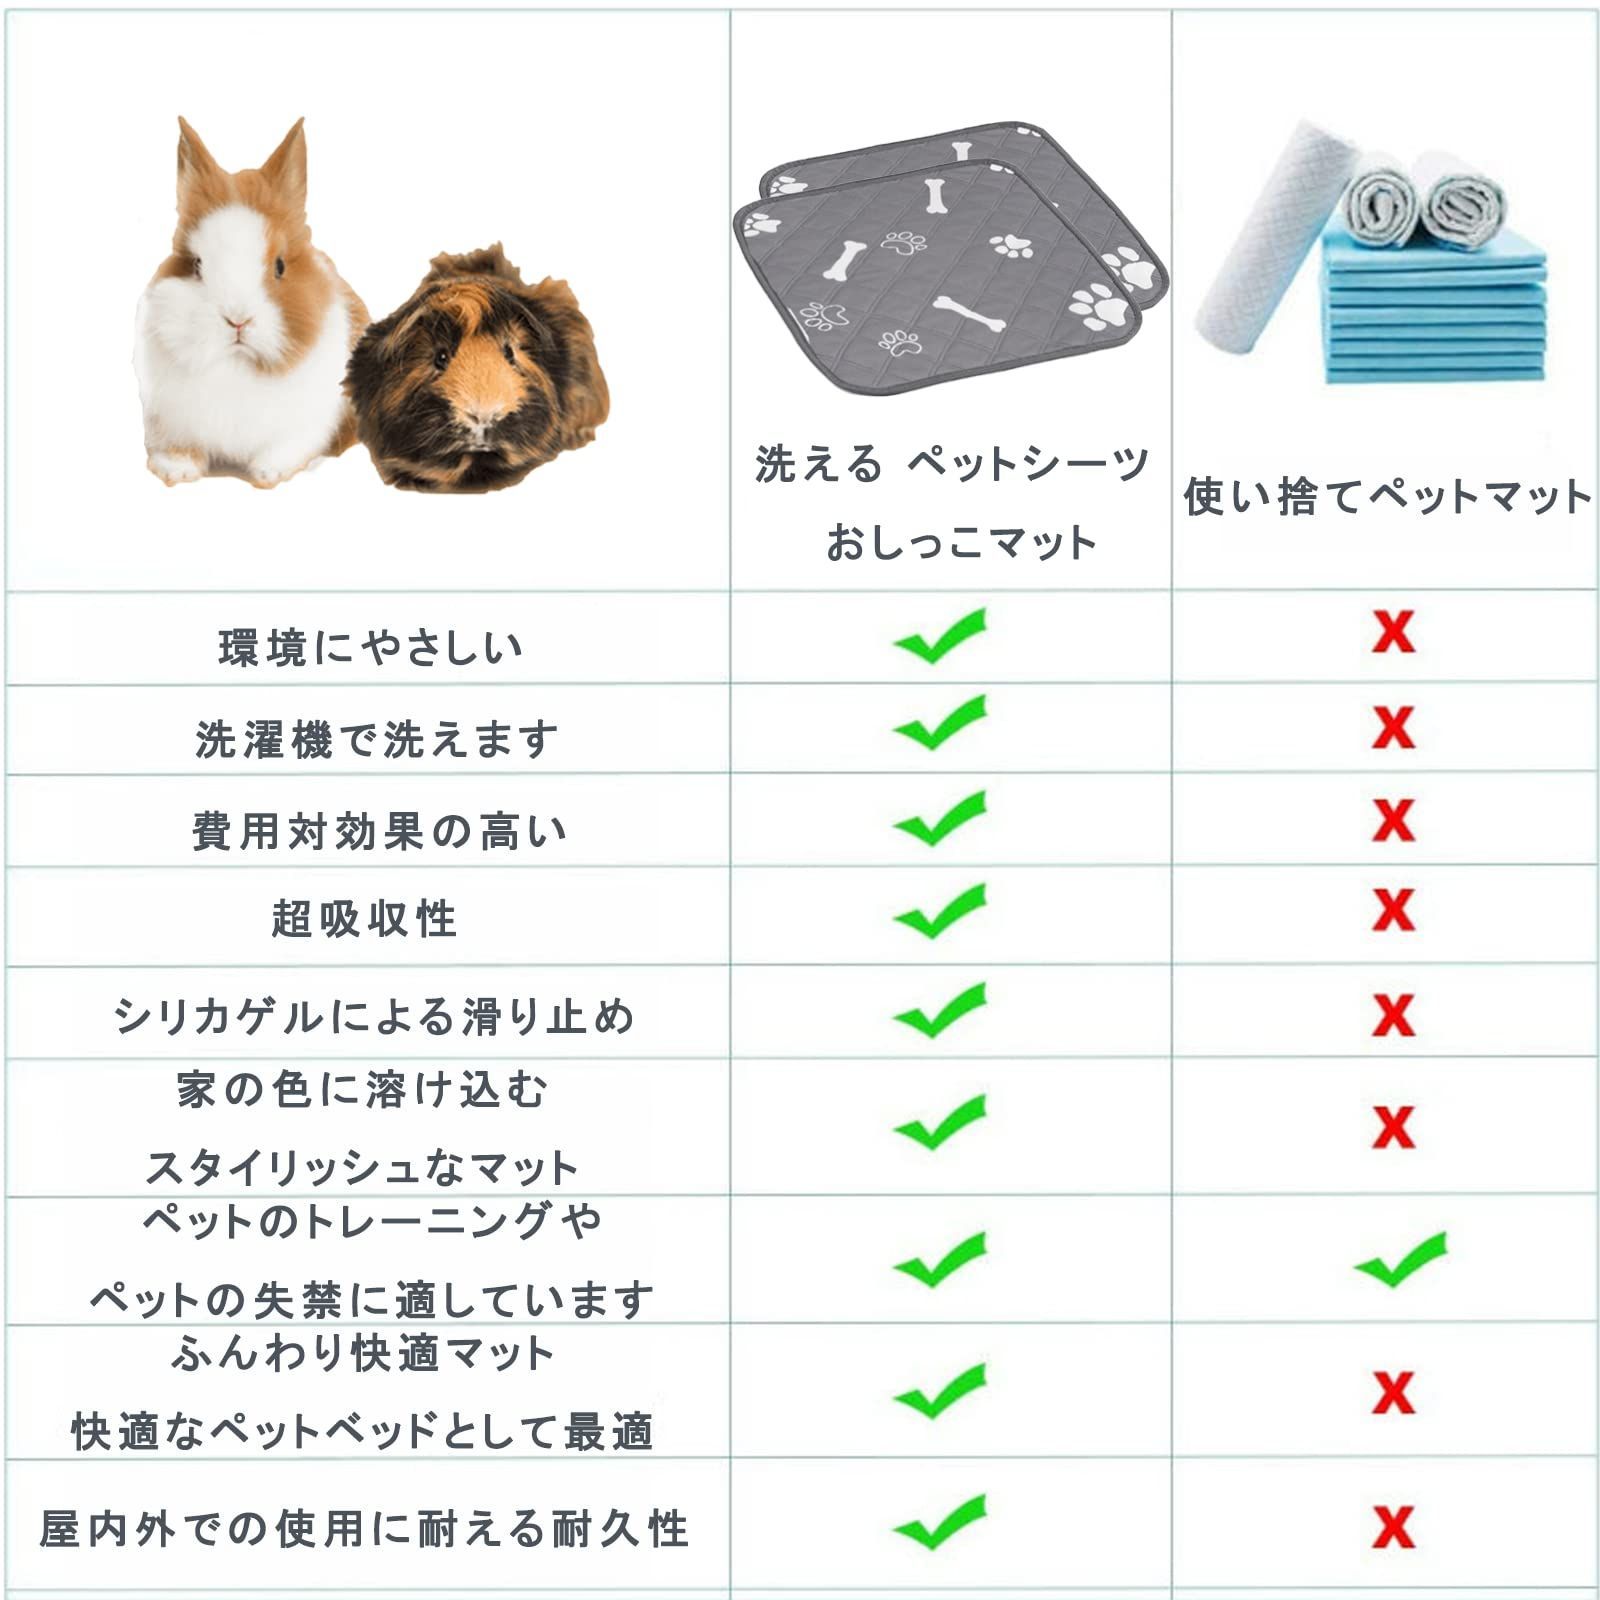 【色: ライトブルー】heatcozy 洗える ペットシーツ 犬 猫用 おしっこ